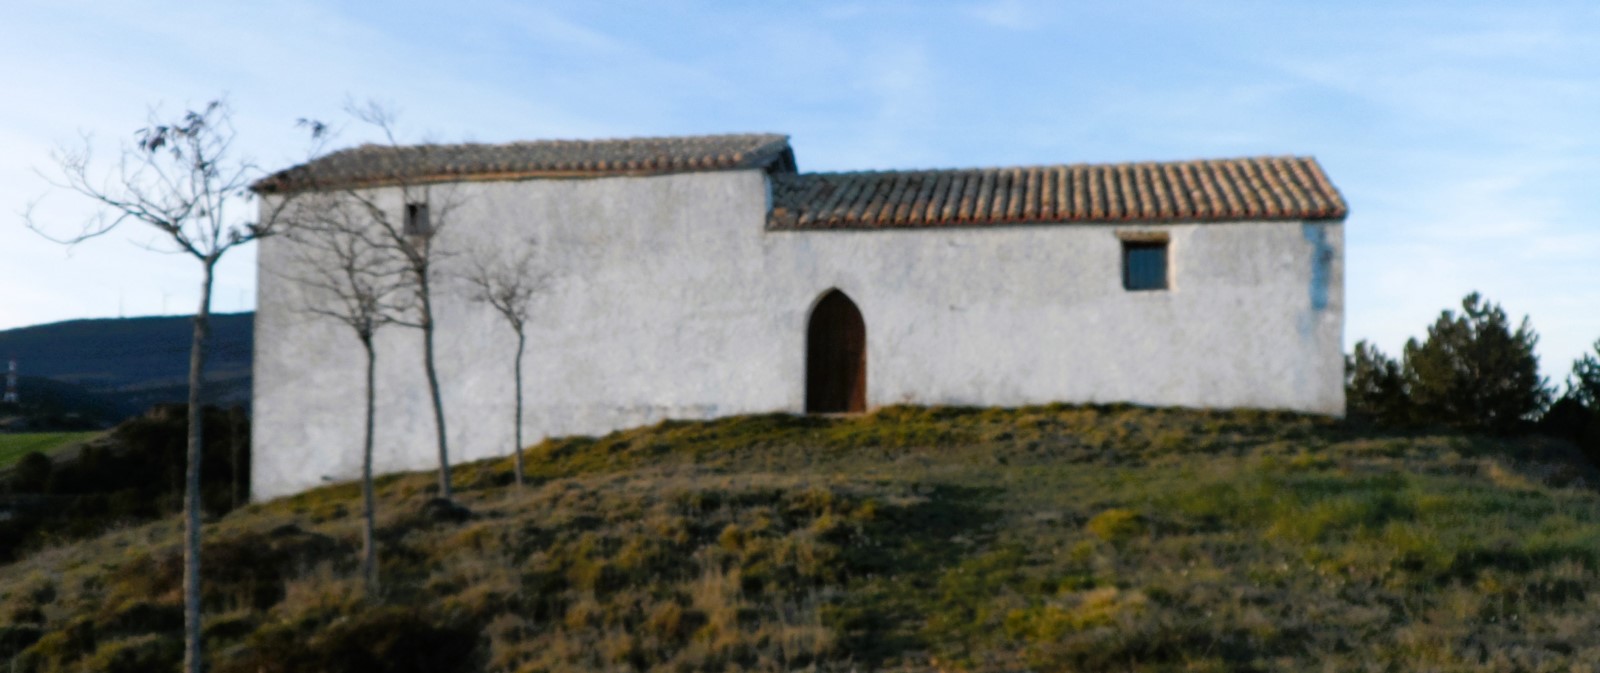 Biurrun Olcoz. Ermita de San Cristóbal.